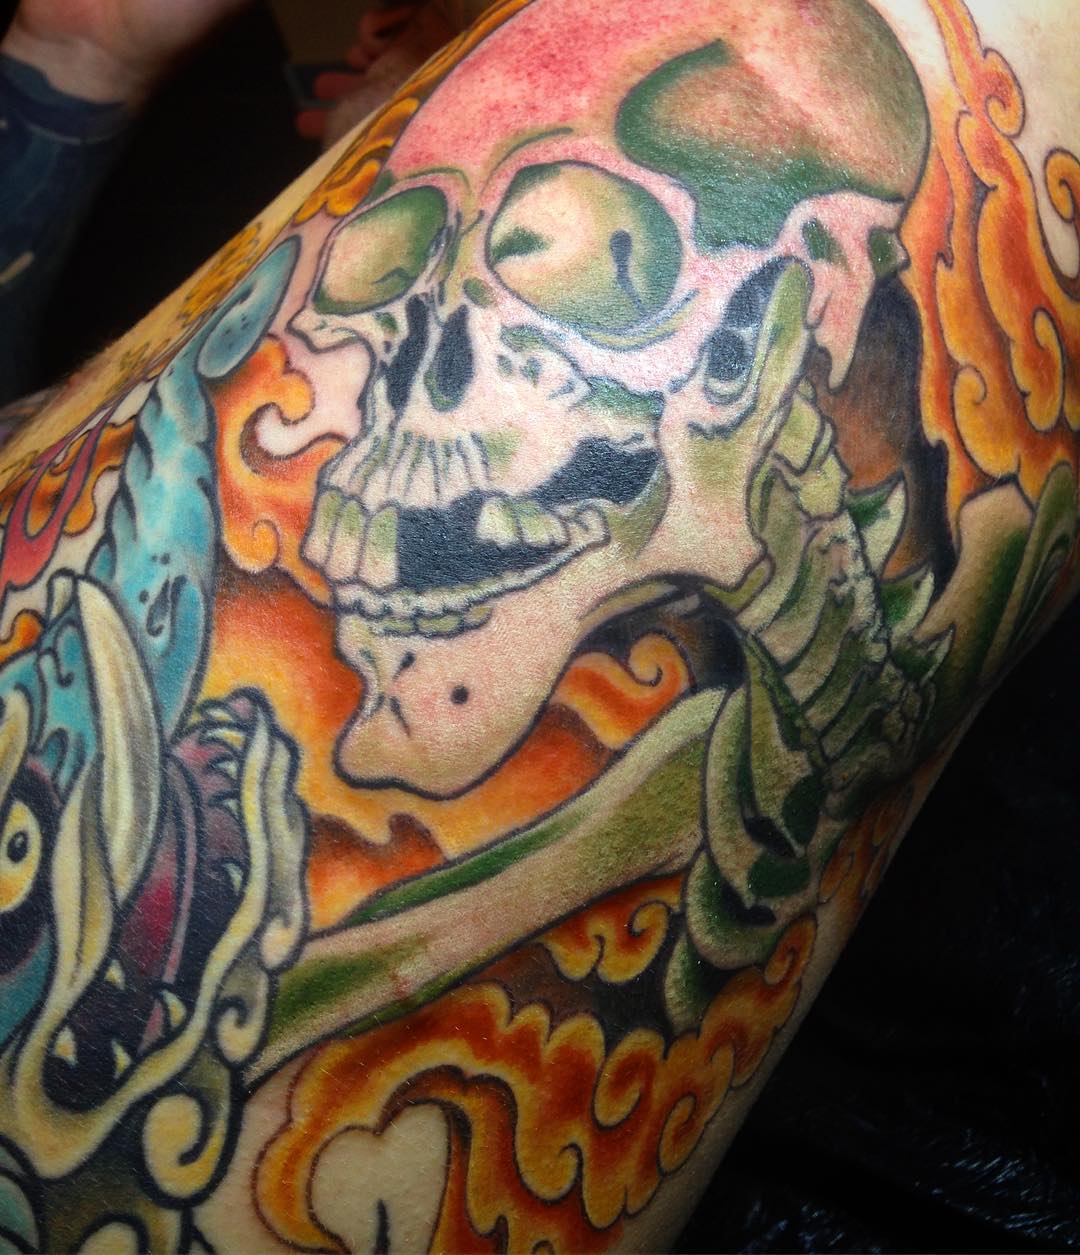 Still in progress, but sooo much fun on this rib panel!

#tattoo #tattooing #tat...